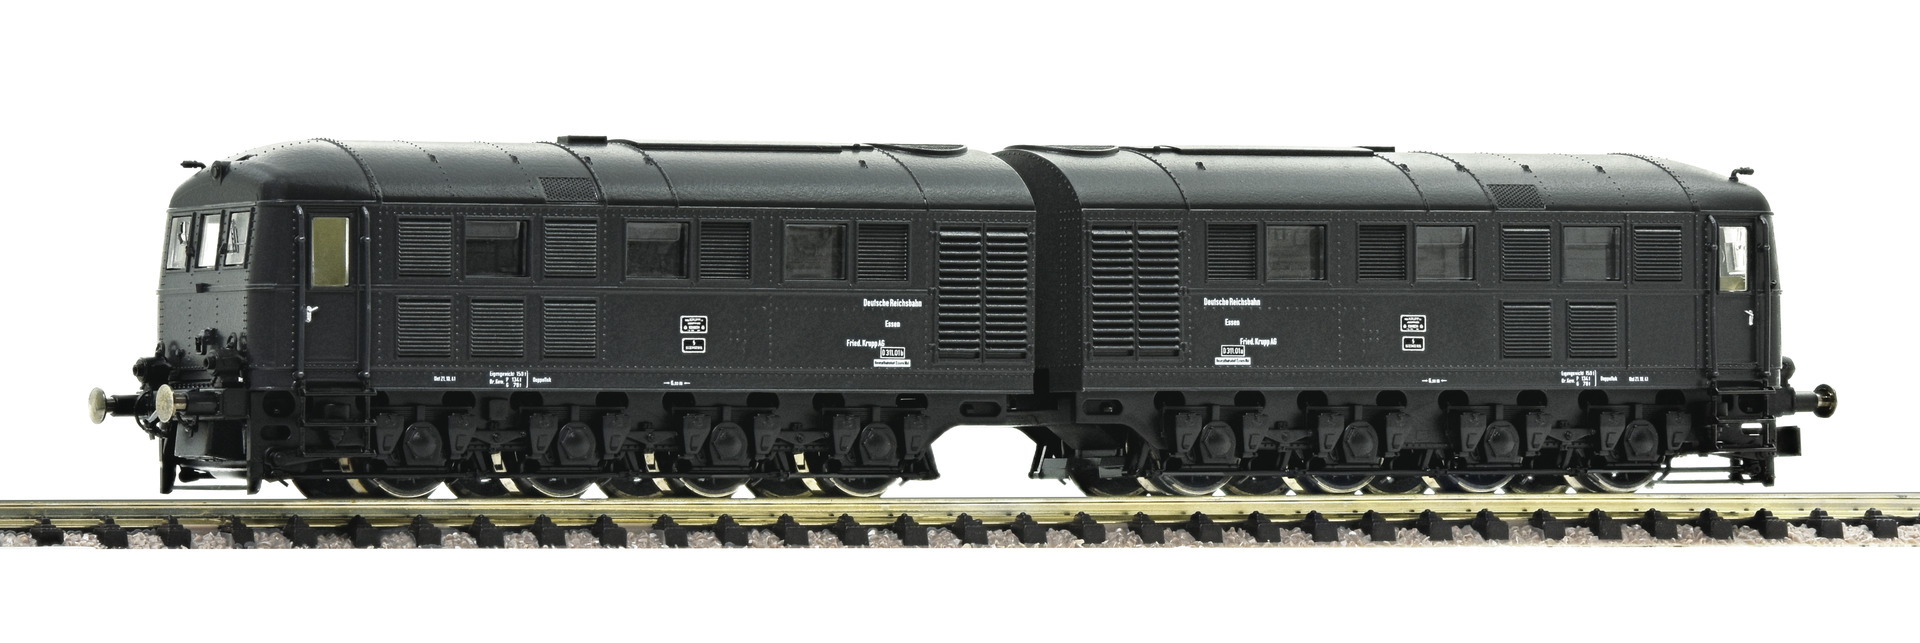 Fleischmann 725171 Dieselelektrische Doppellokomotive D311.01 